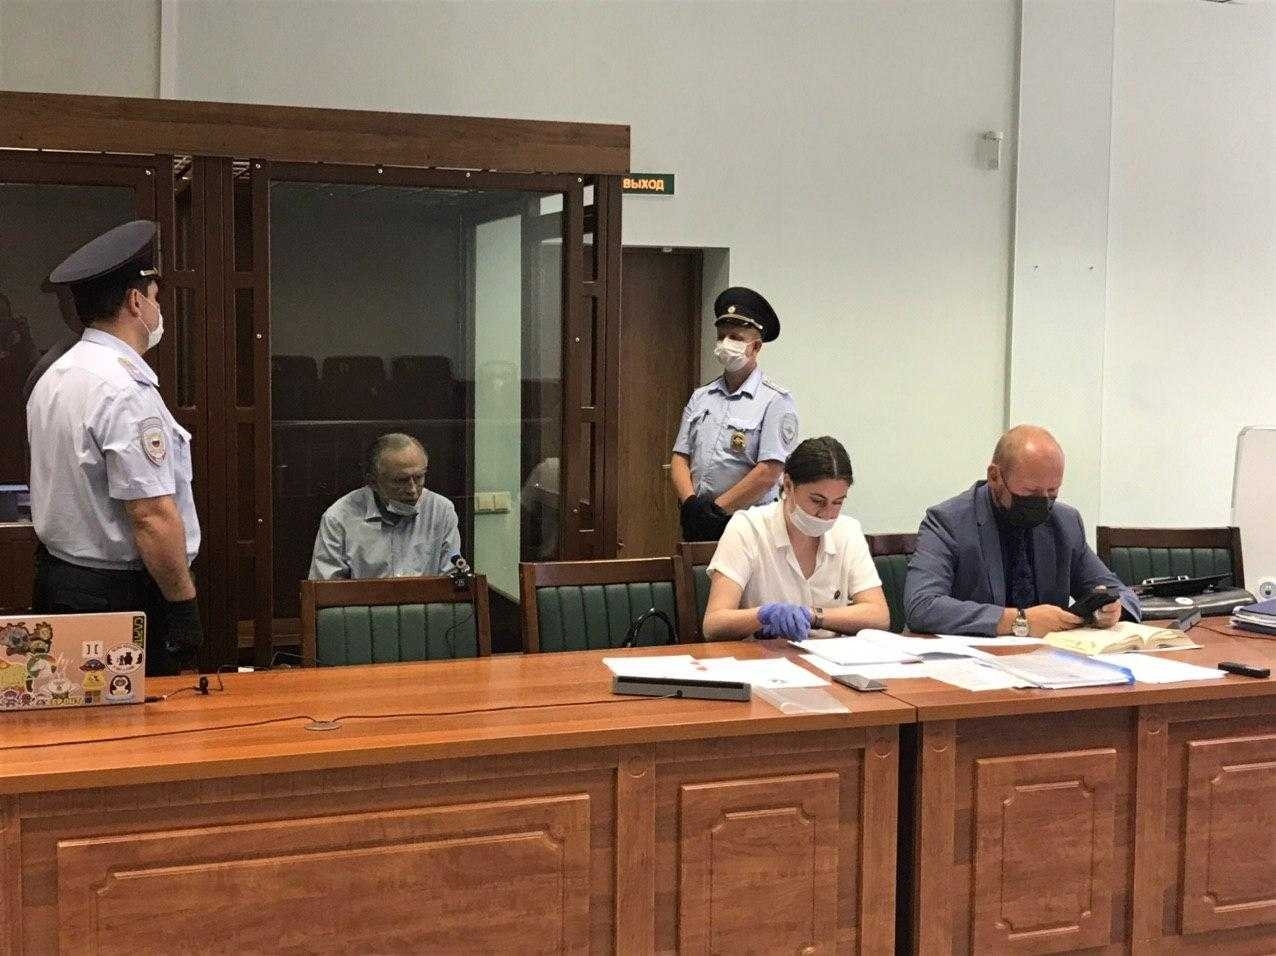 Обвинение запросило для историка Соколова 15 лет колонии за убийство аспирантки